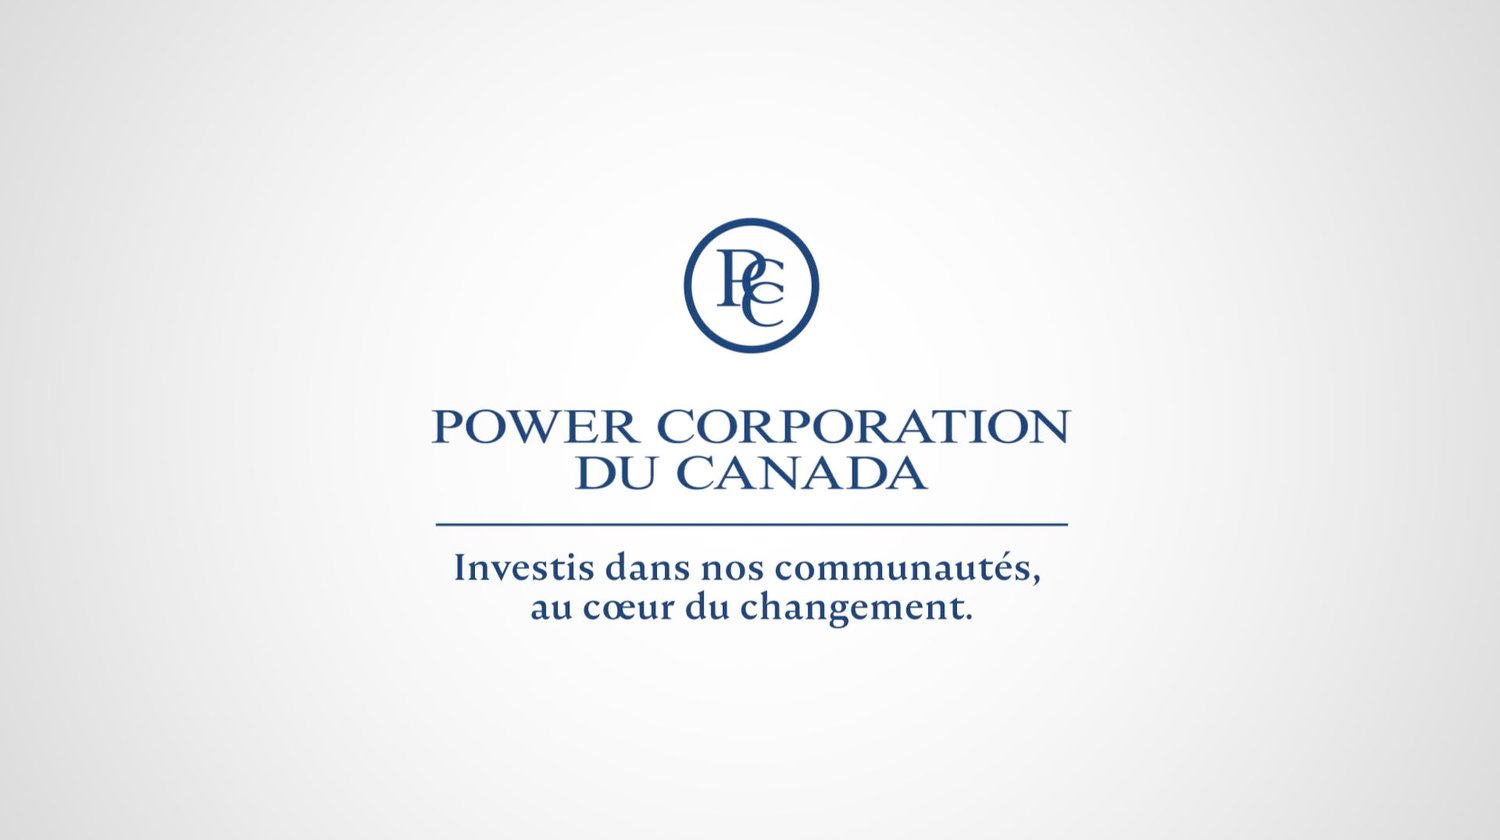 Power Corporation dans la collectivité